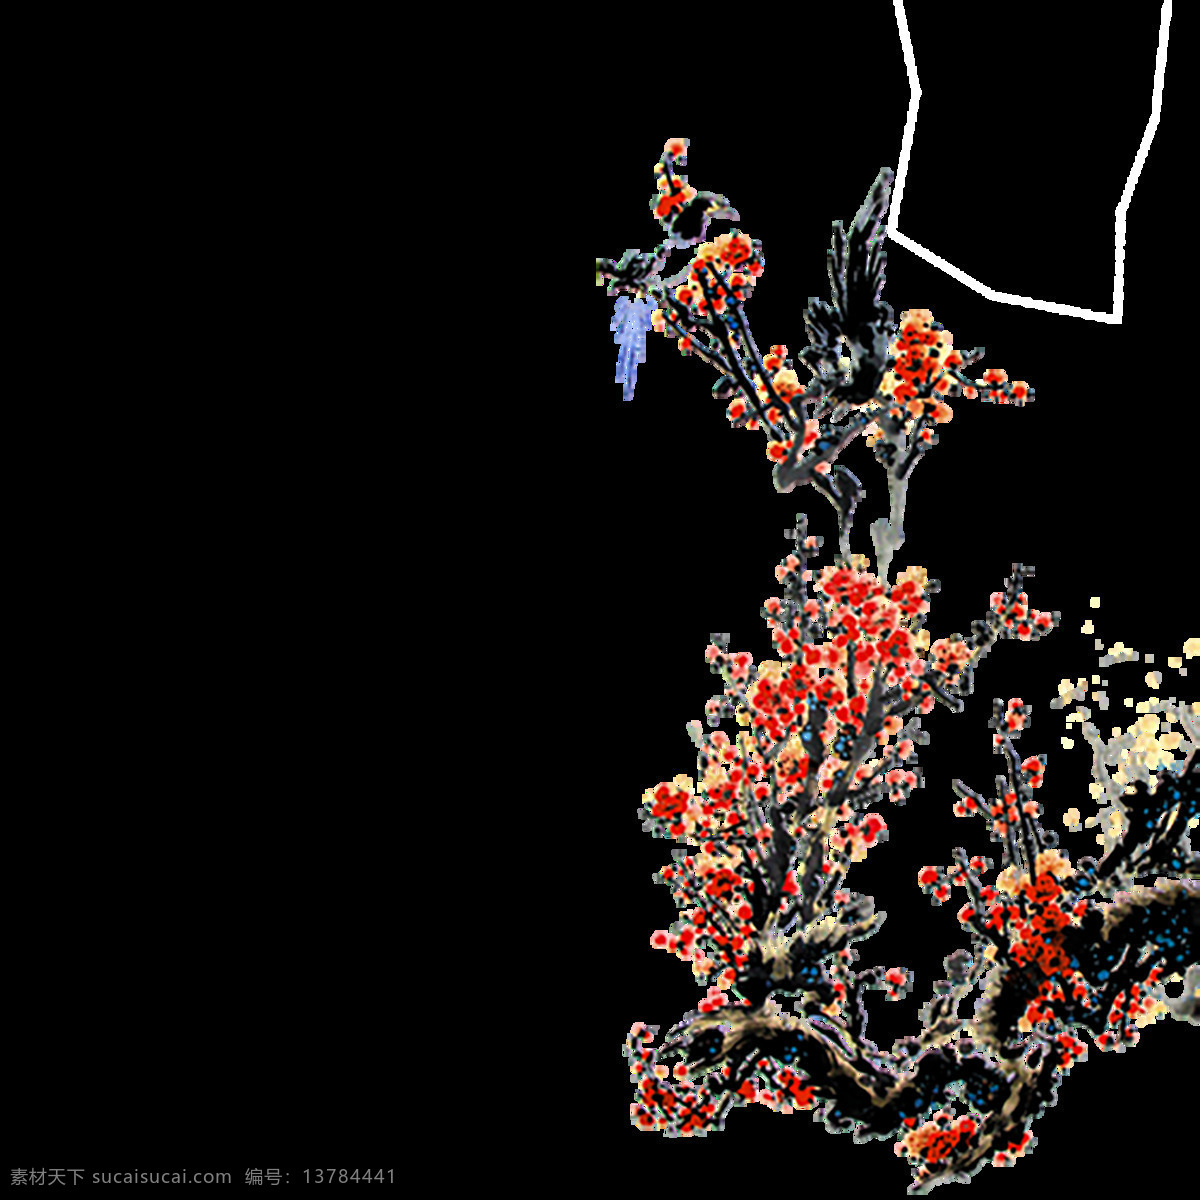 梅花 树枝 主题 装饰 免 抠 红色梅花 花 花枝 节日 庆祝 设计素材 手绘 水墨画 喜庆 元素 植物 中国元素